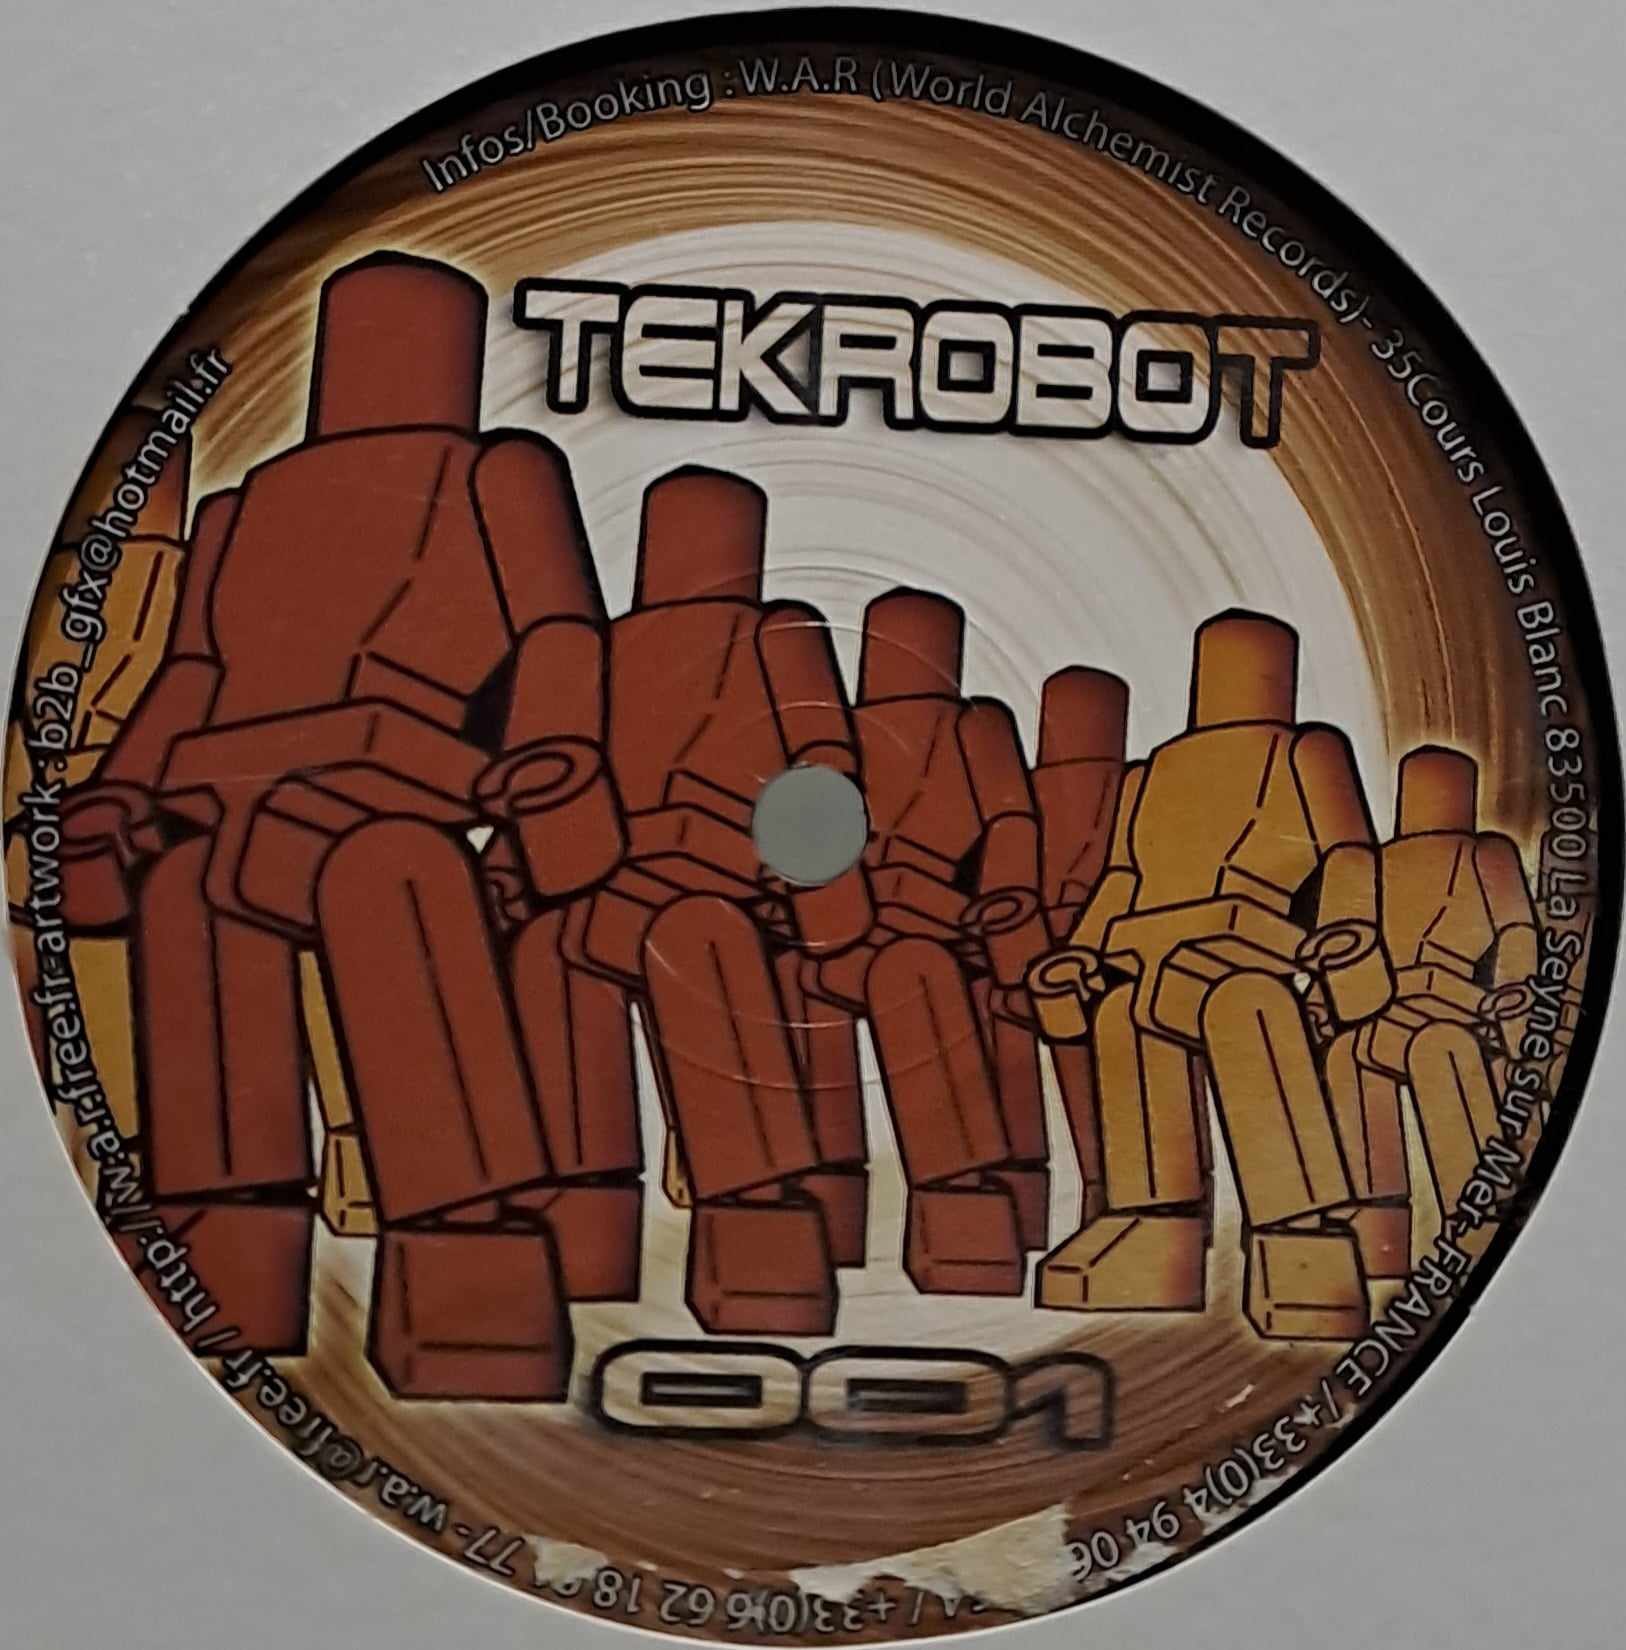 Tek Robot 01 - vinyle freetekno